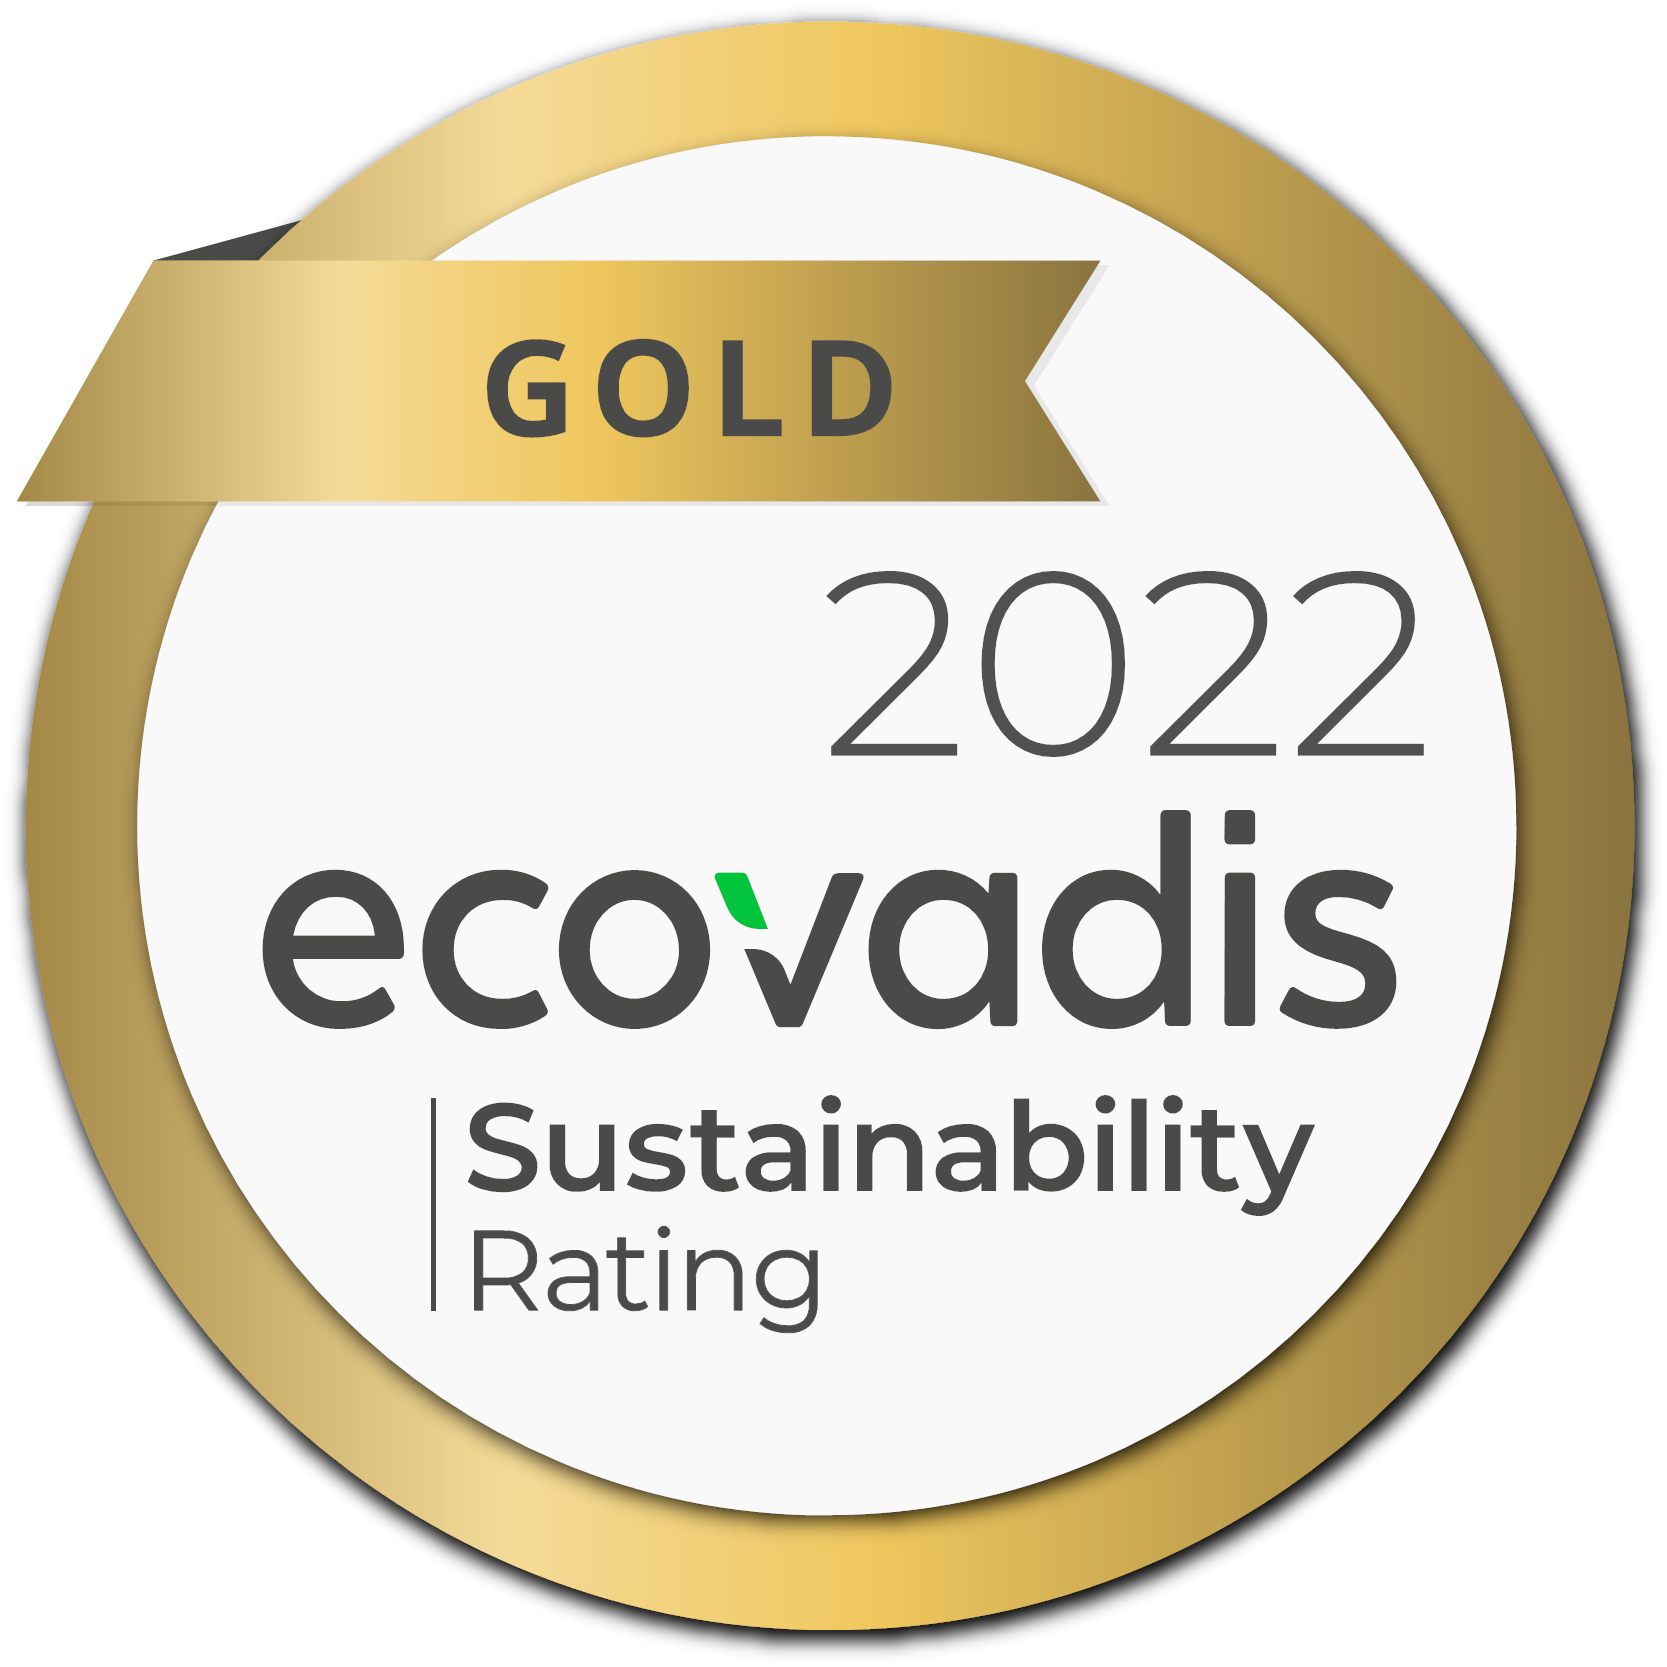 Award: Sustainability - ecovadis